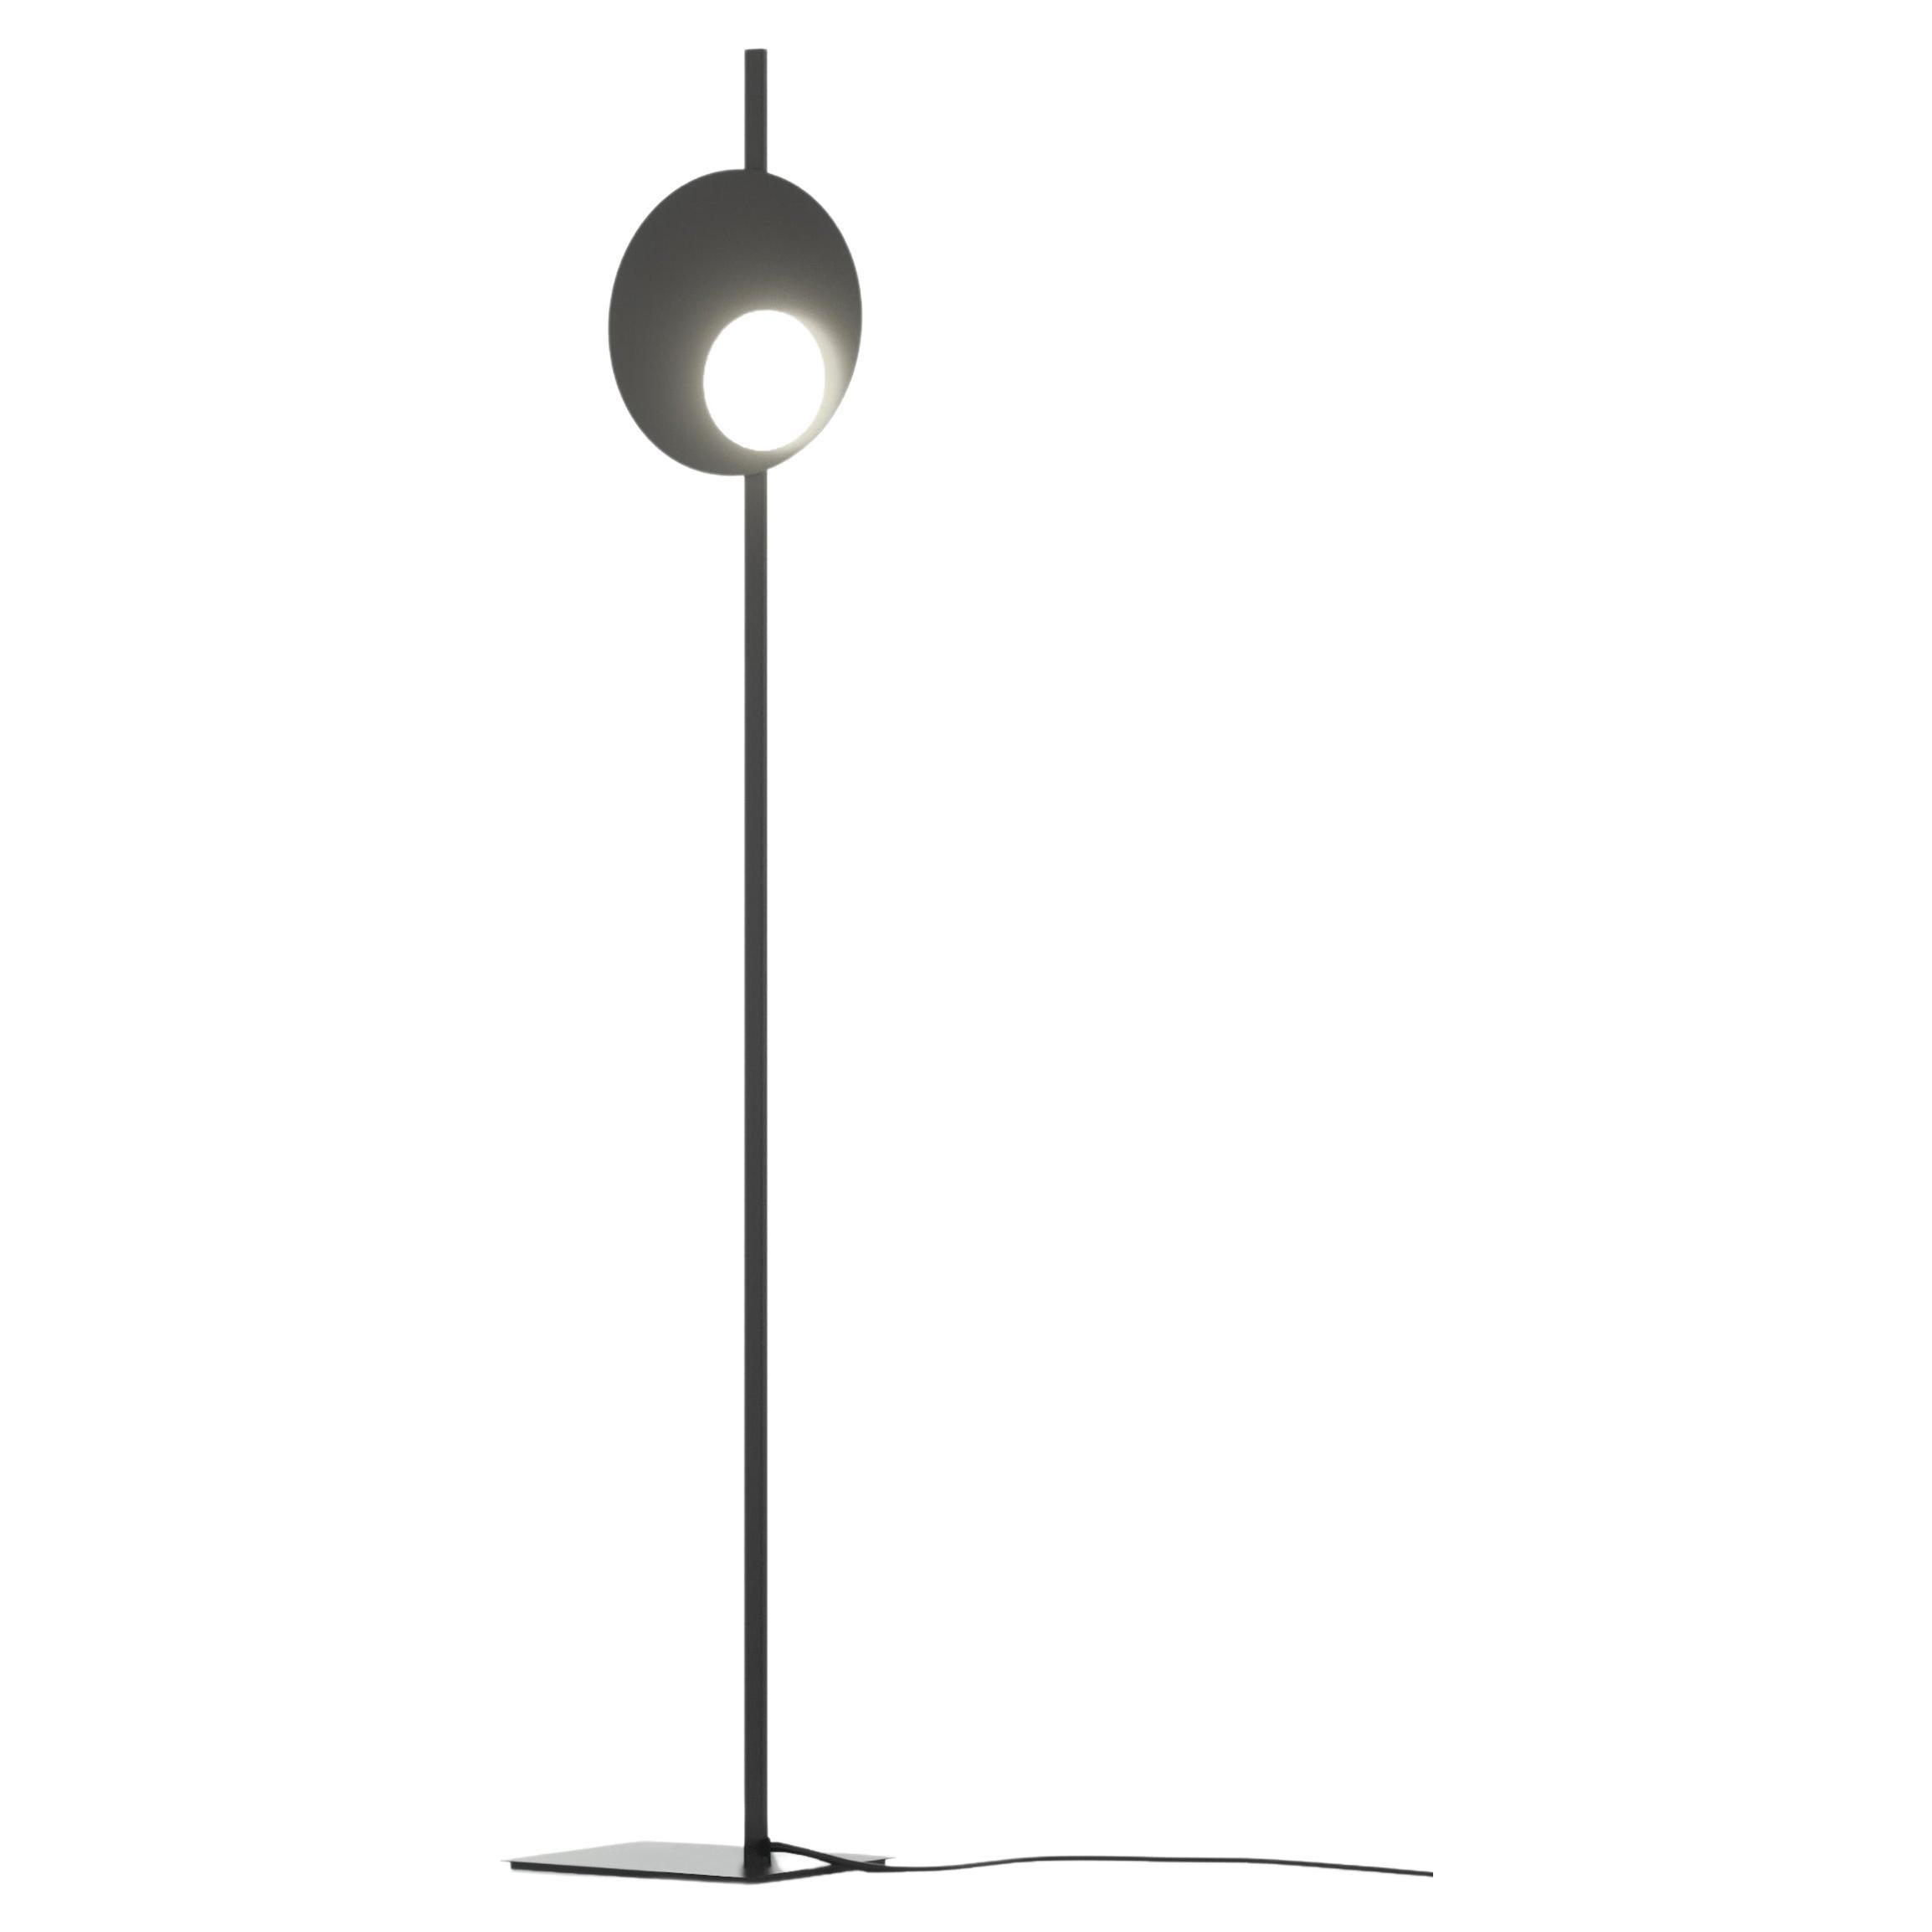 Axolight Kwic 36 Medium Floor Lamp in Intense Black by Robert Cornelisse